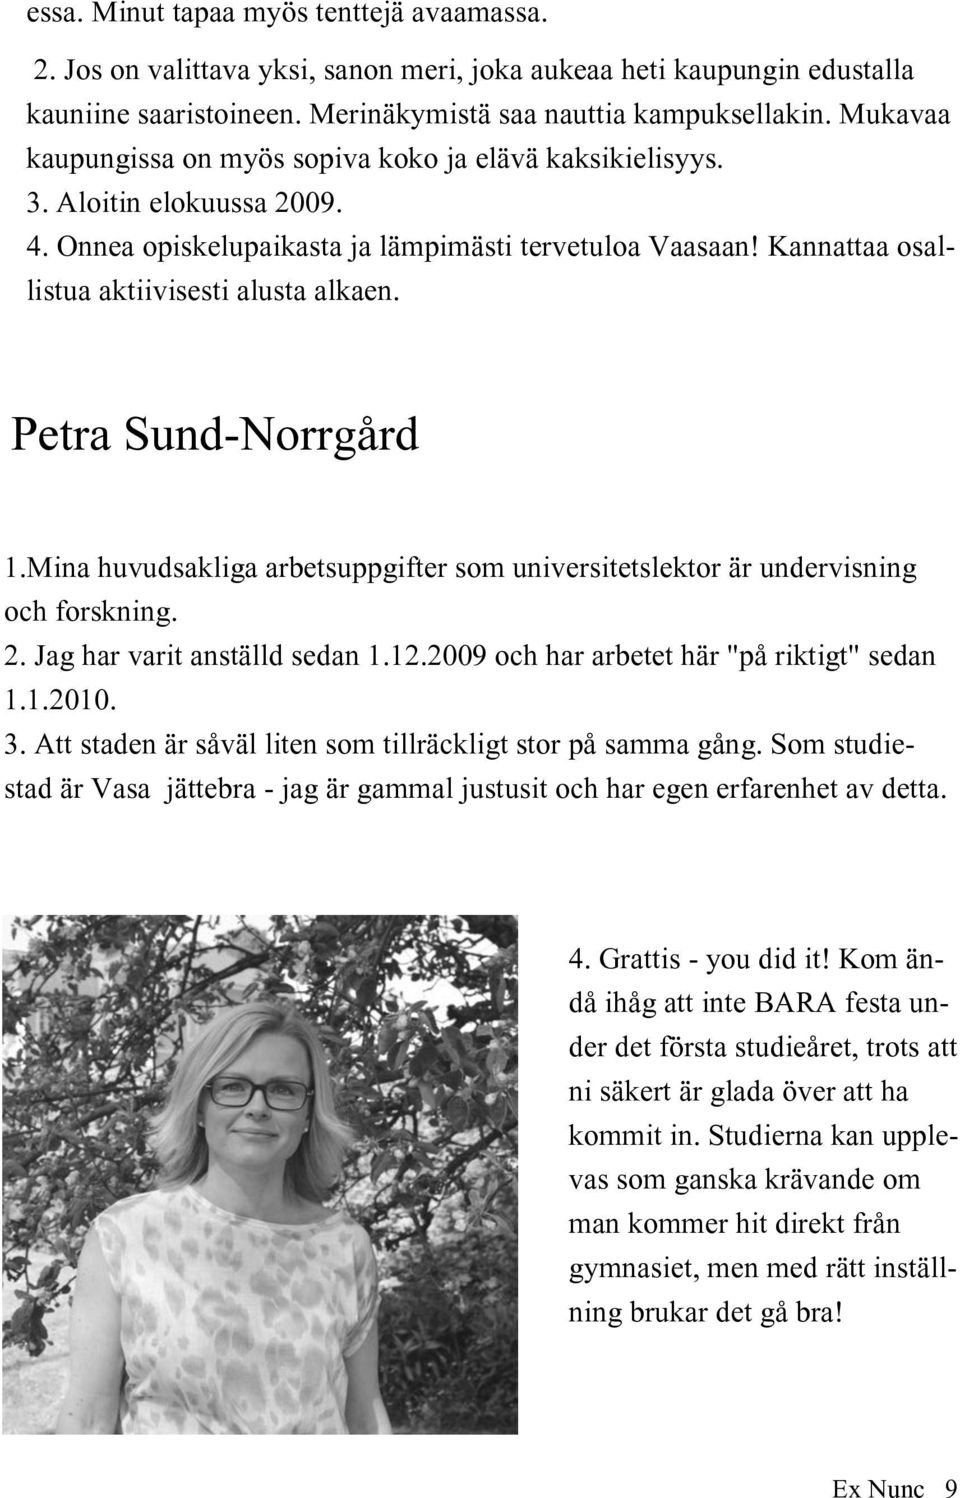 Petra Sund-Norrgård 1.Mina huvudsakliga arbetsuppgifter som universitetslektor är undervisning och forskning. 2. Jag har varit anställd sedan 1.12.2009 och har arbetet här "på riktigt" sedan 1.1.2010.